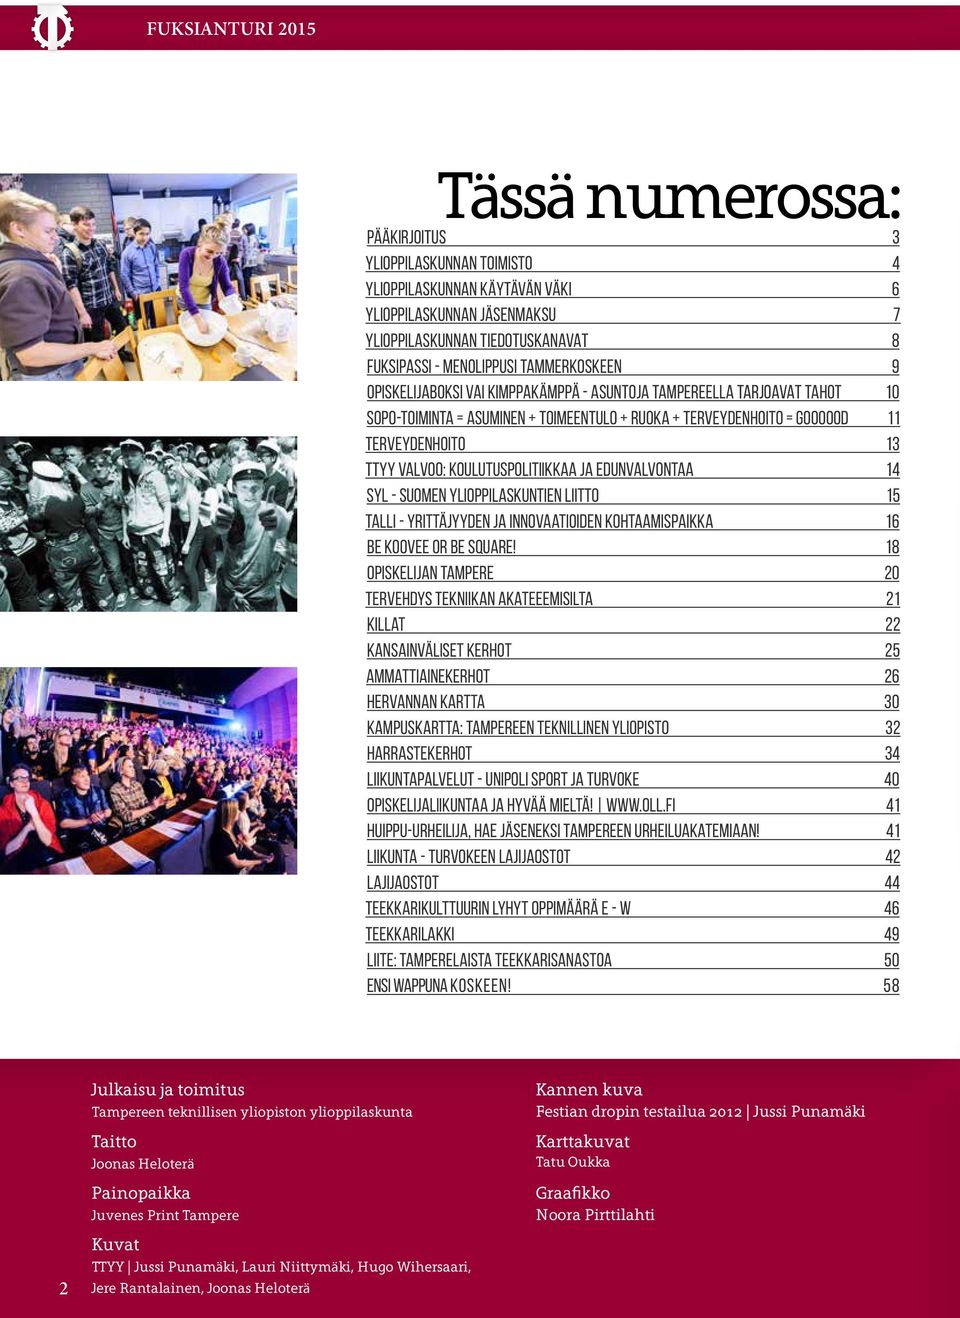 koulutuspolitiikkaa ja edunvalvontaa 14 SYL - Suomen ylioppilaskuntien liitto 15 TALLI - yrittäjyyden ja innovaatioiden kohtaamispaikka 16 Be KooVee or be Square!